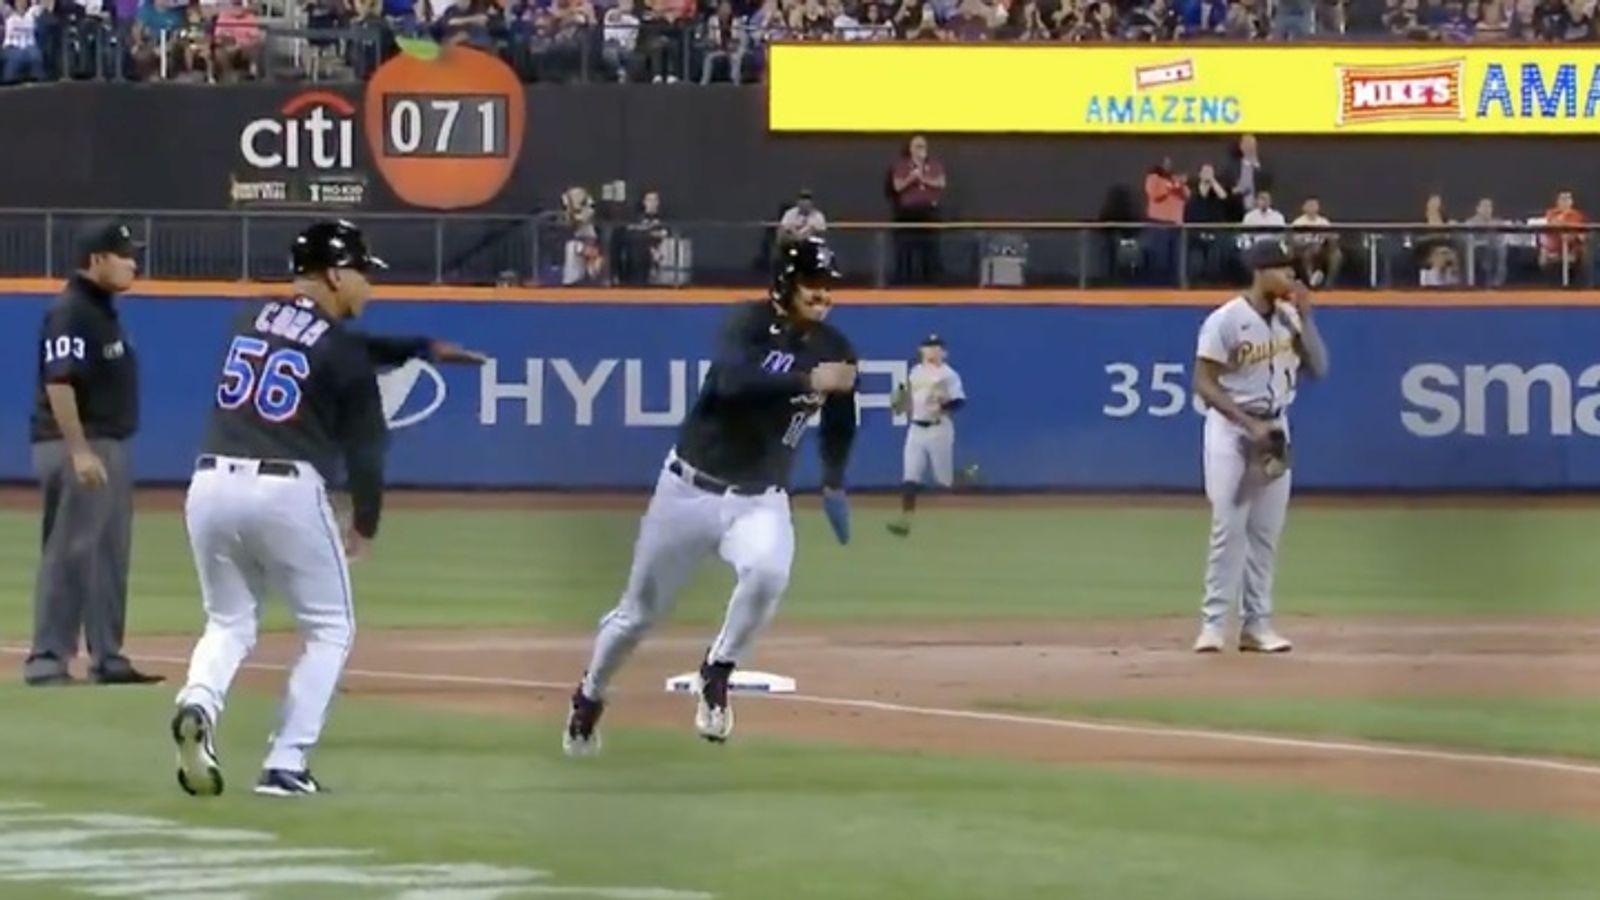 Video: Ke'Bryan Hayes seen eating sunflower seeds during Mets' run-scoring  play